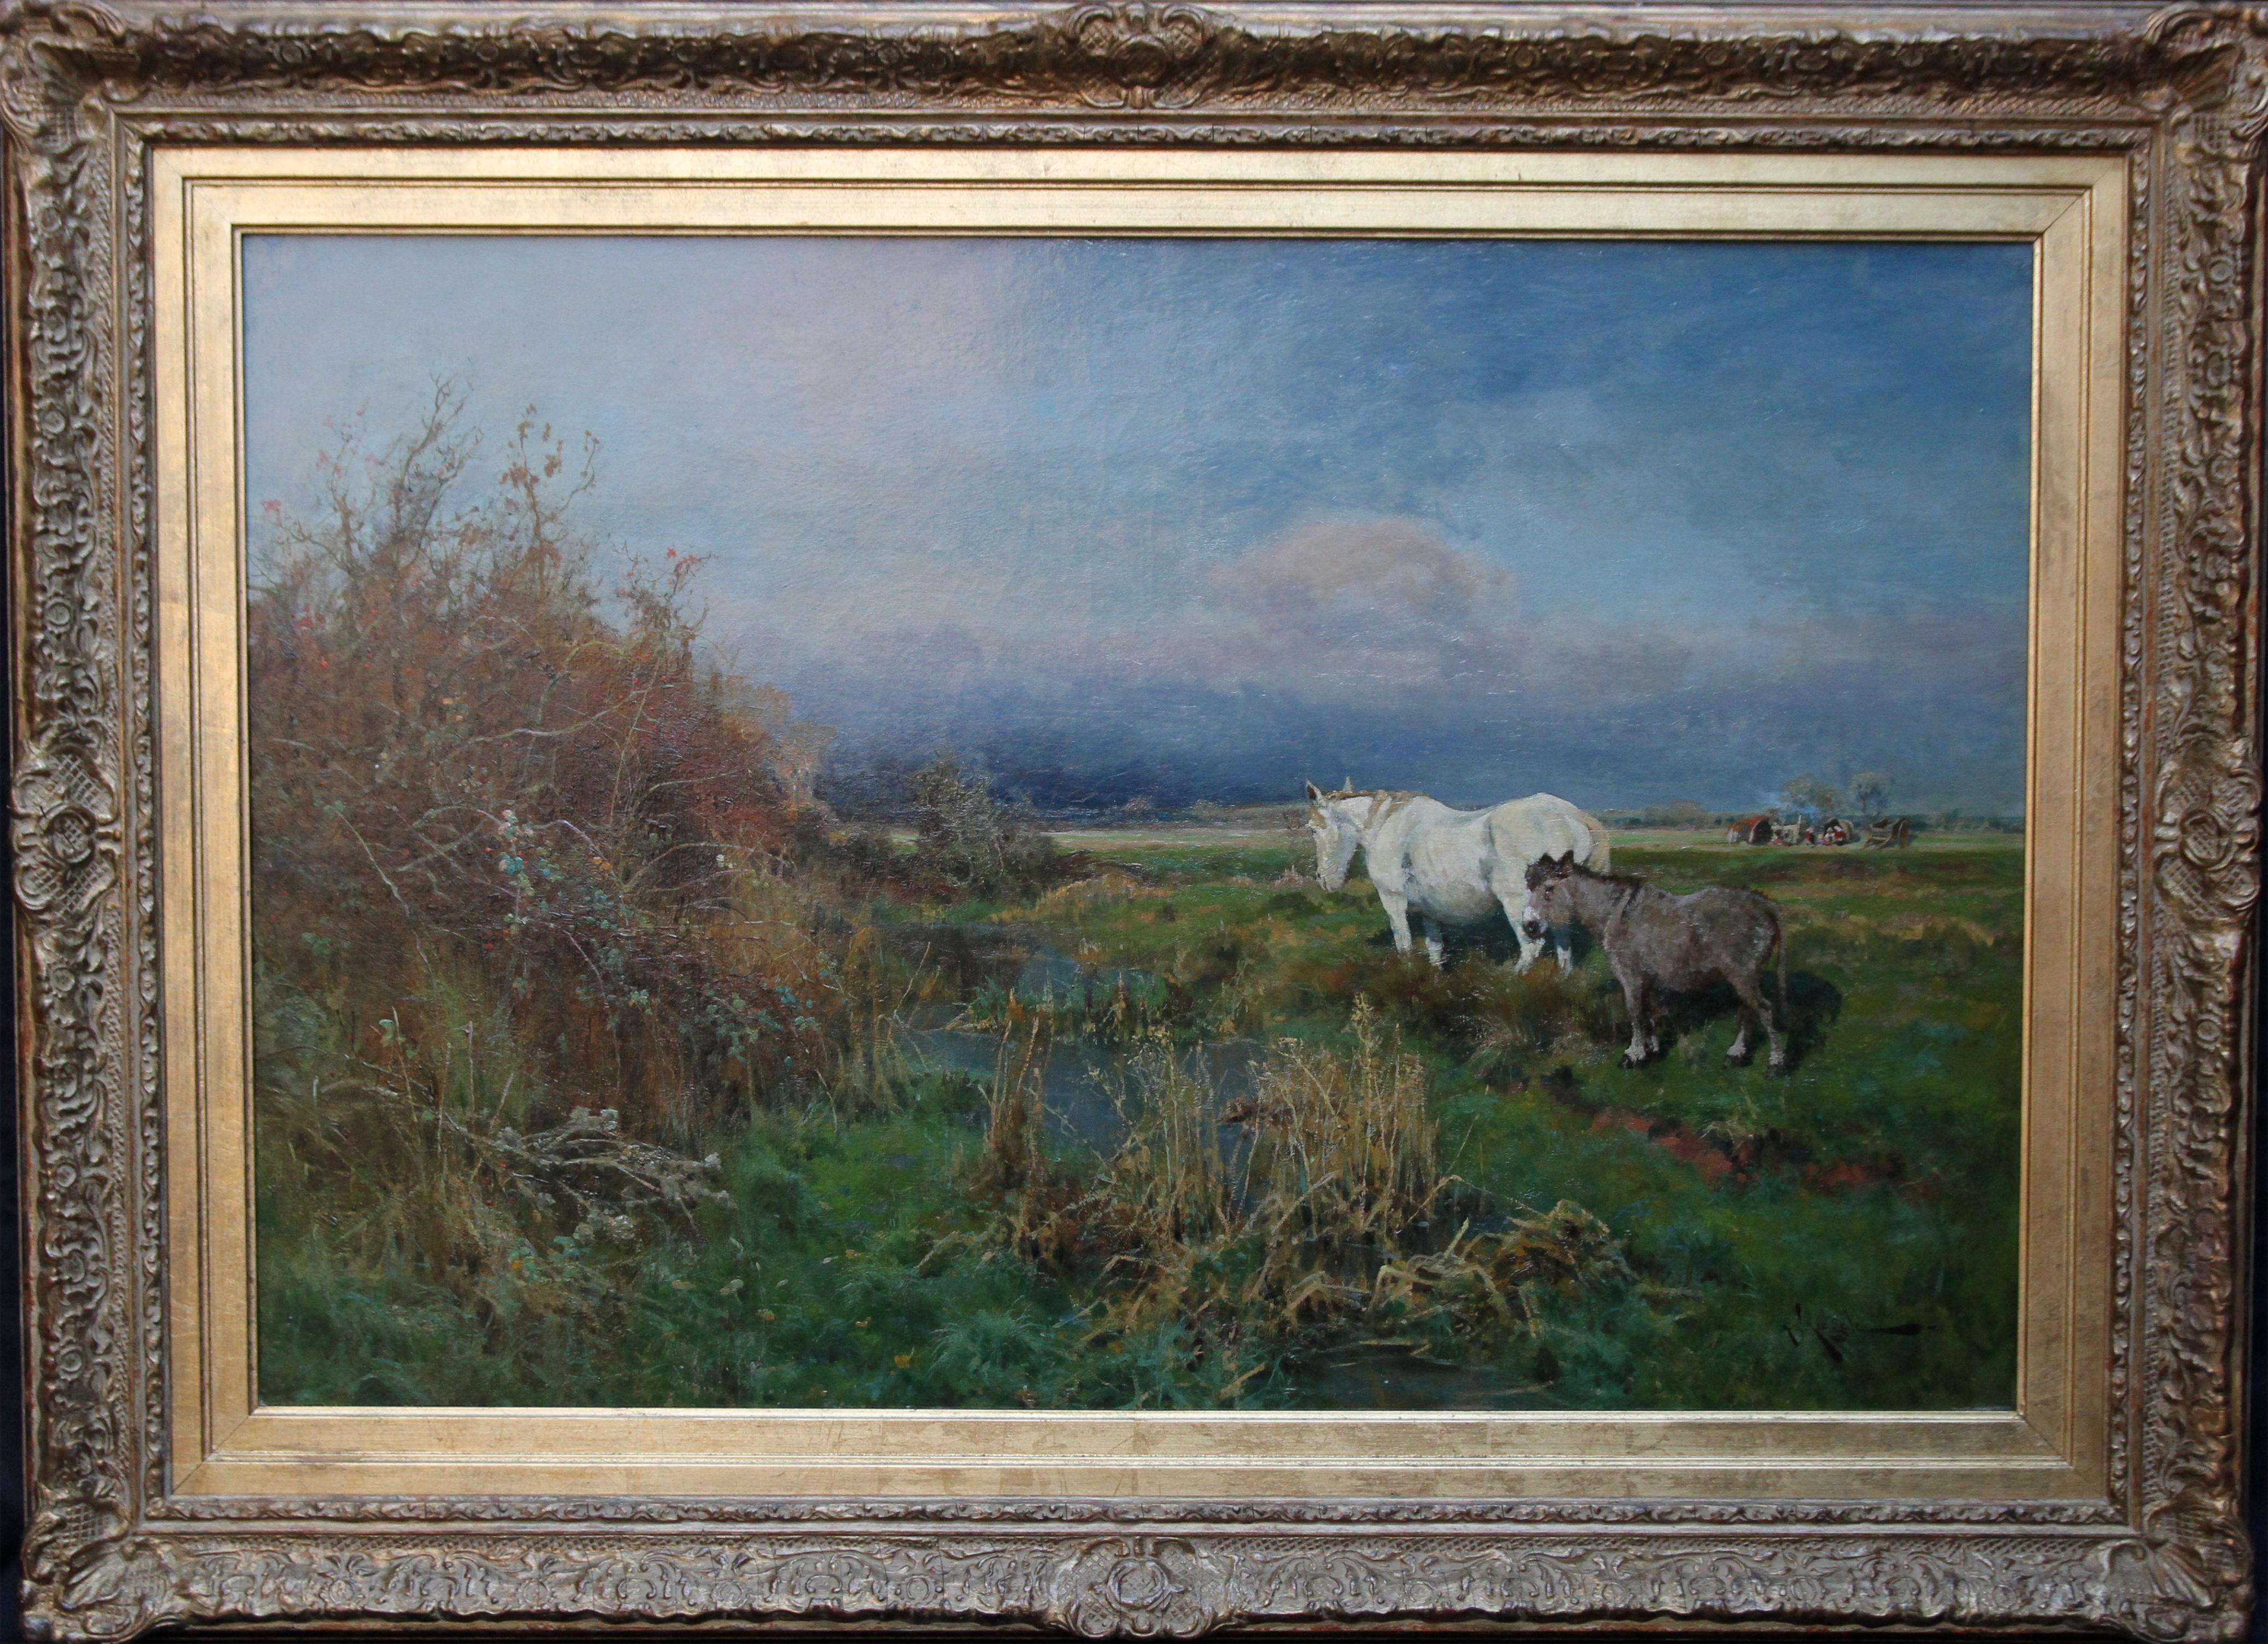 Landscape Painting Arthur William Redgate - Paysage de Nottingham avec cheval - Peinture à l'huile britannique de 1900 - Art équestre